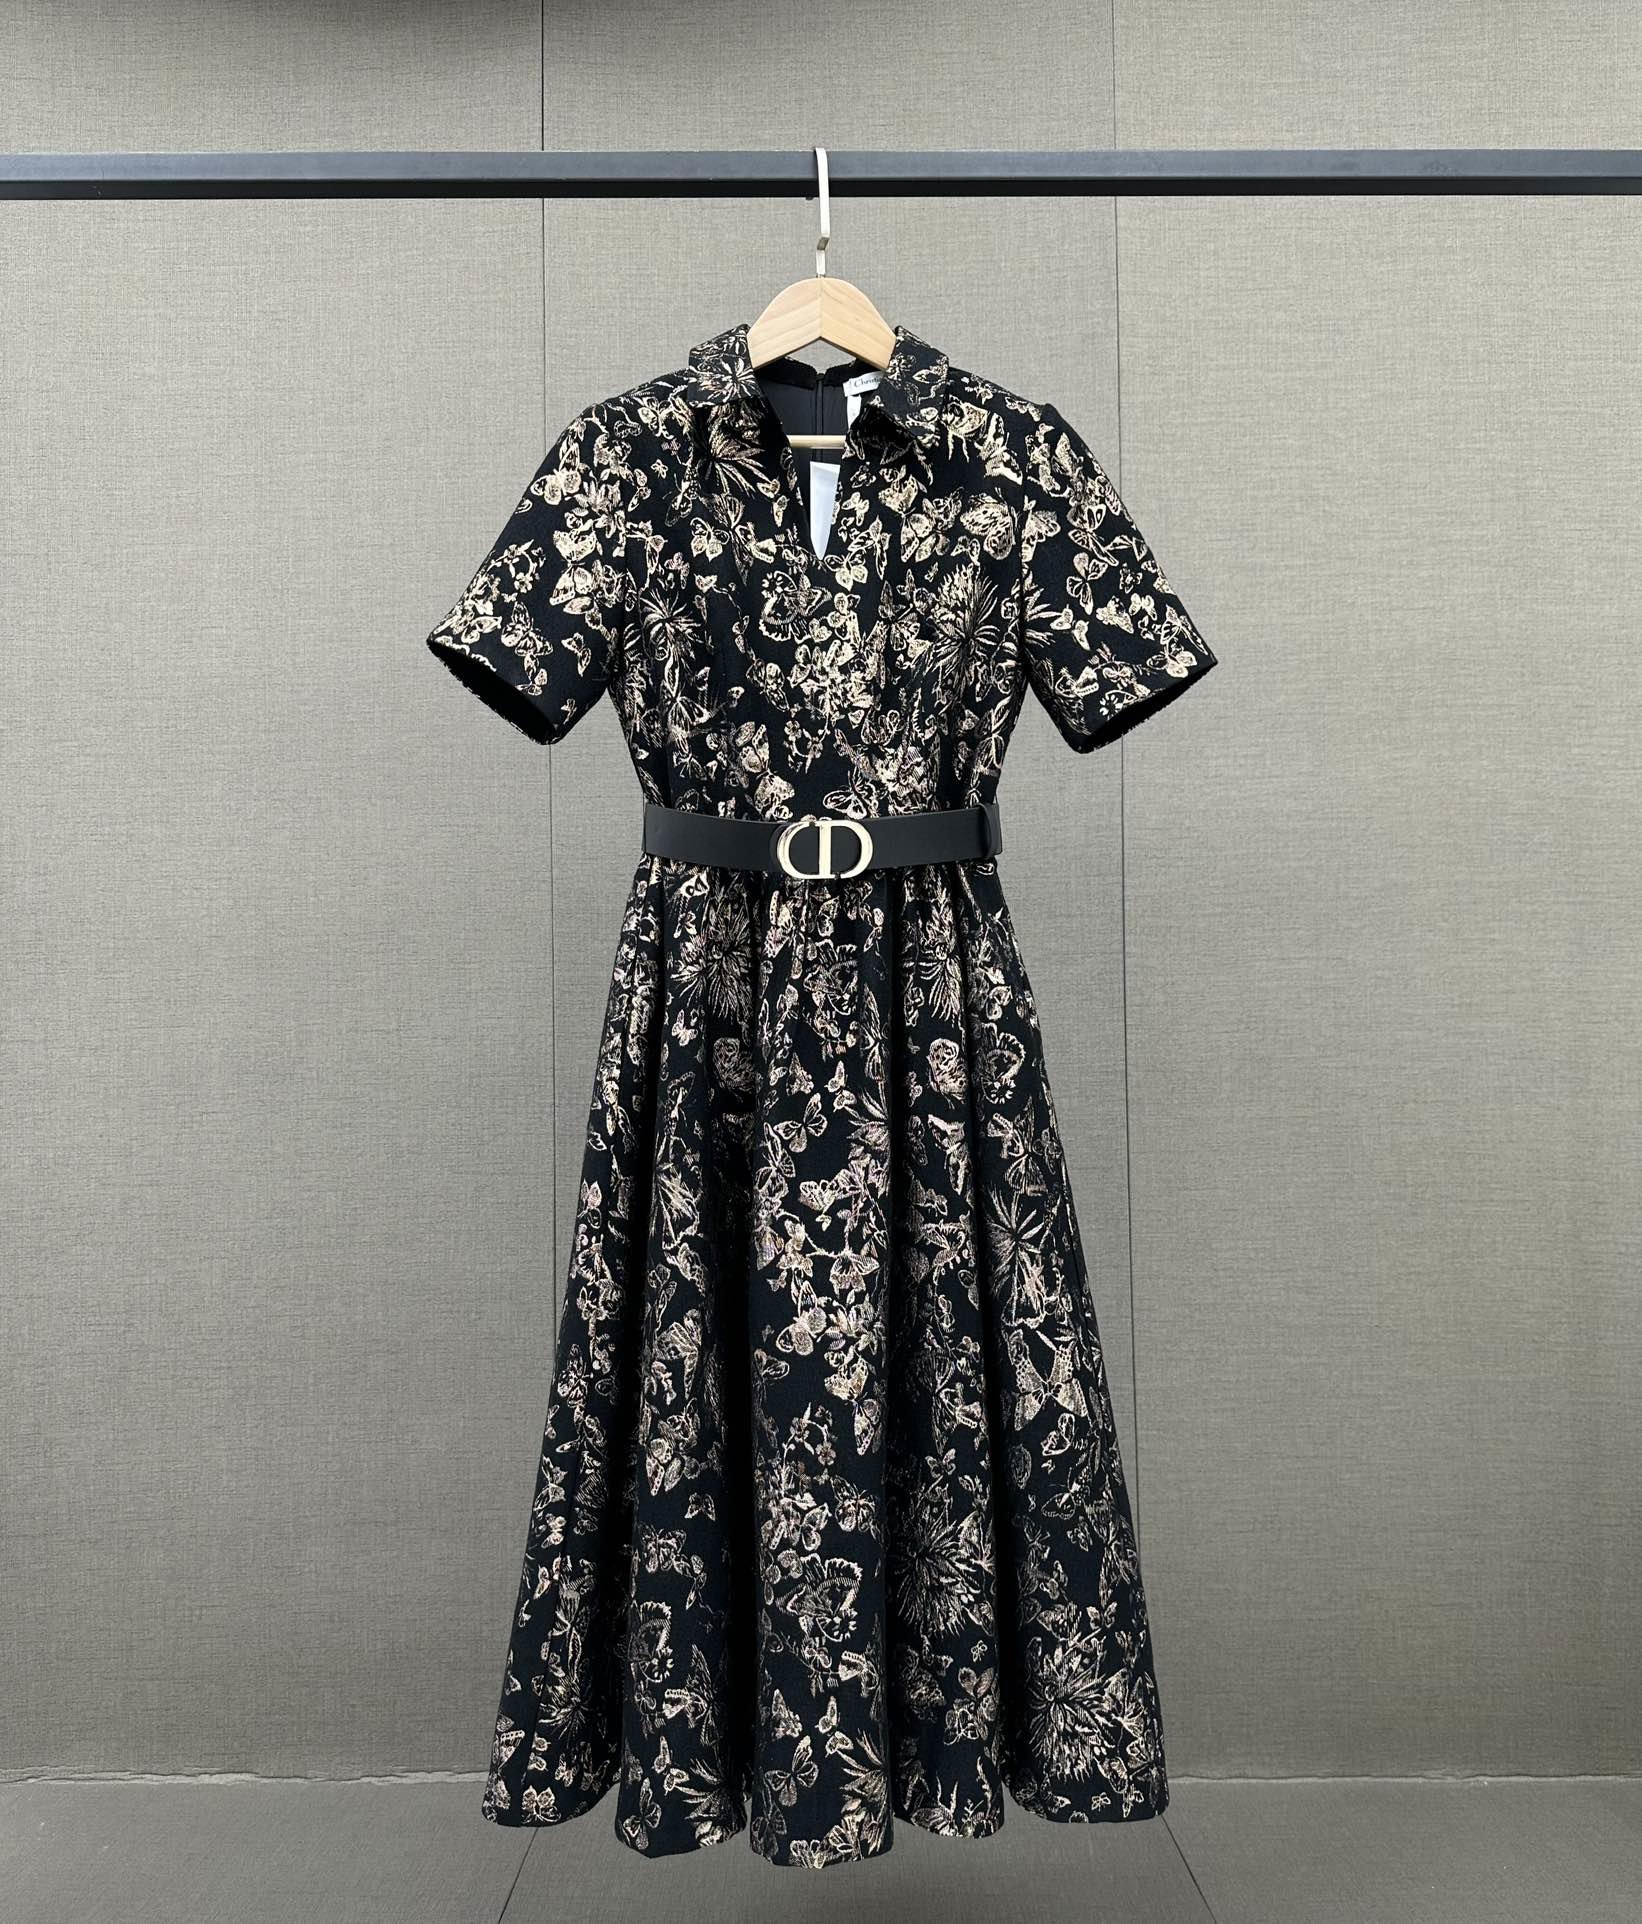 典雅的印花设计带有丝丝复古韵味摩登有腔调感这款Dior连衣裙它能悄悄变得更有价值感精致的版型不刻意的就将